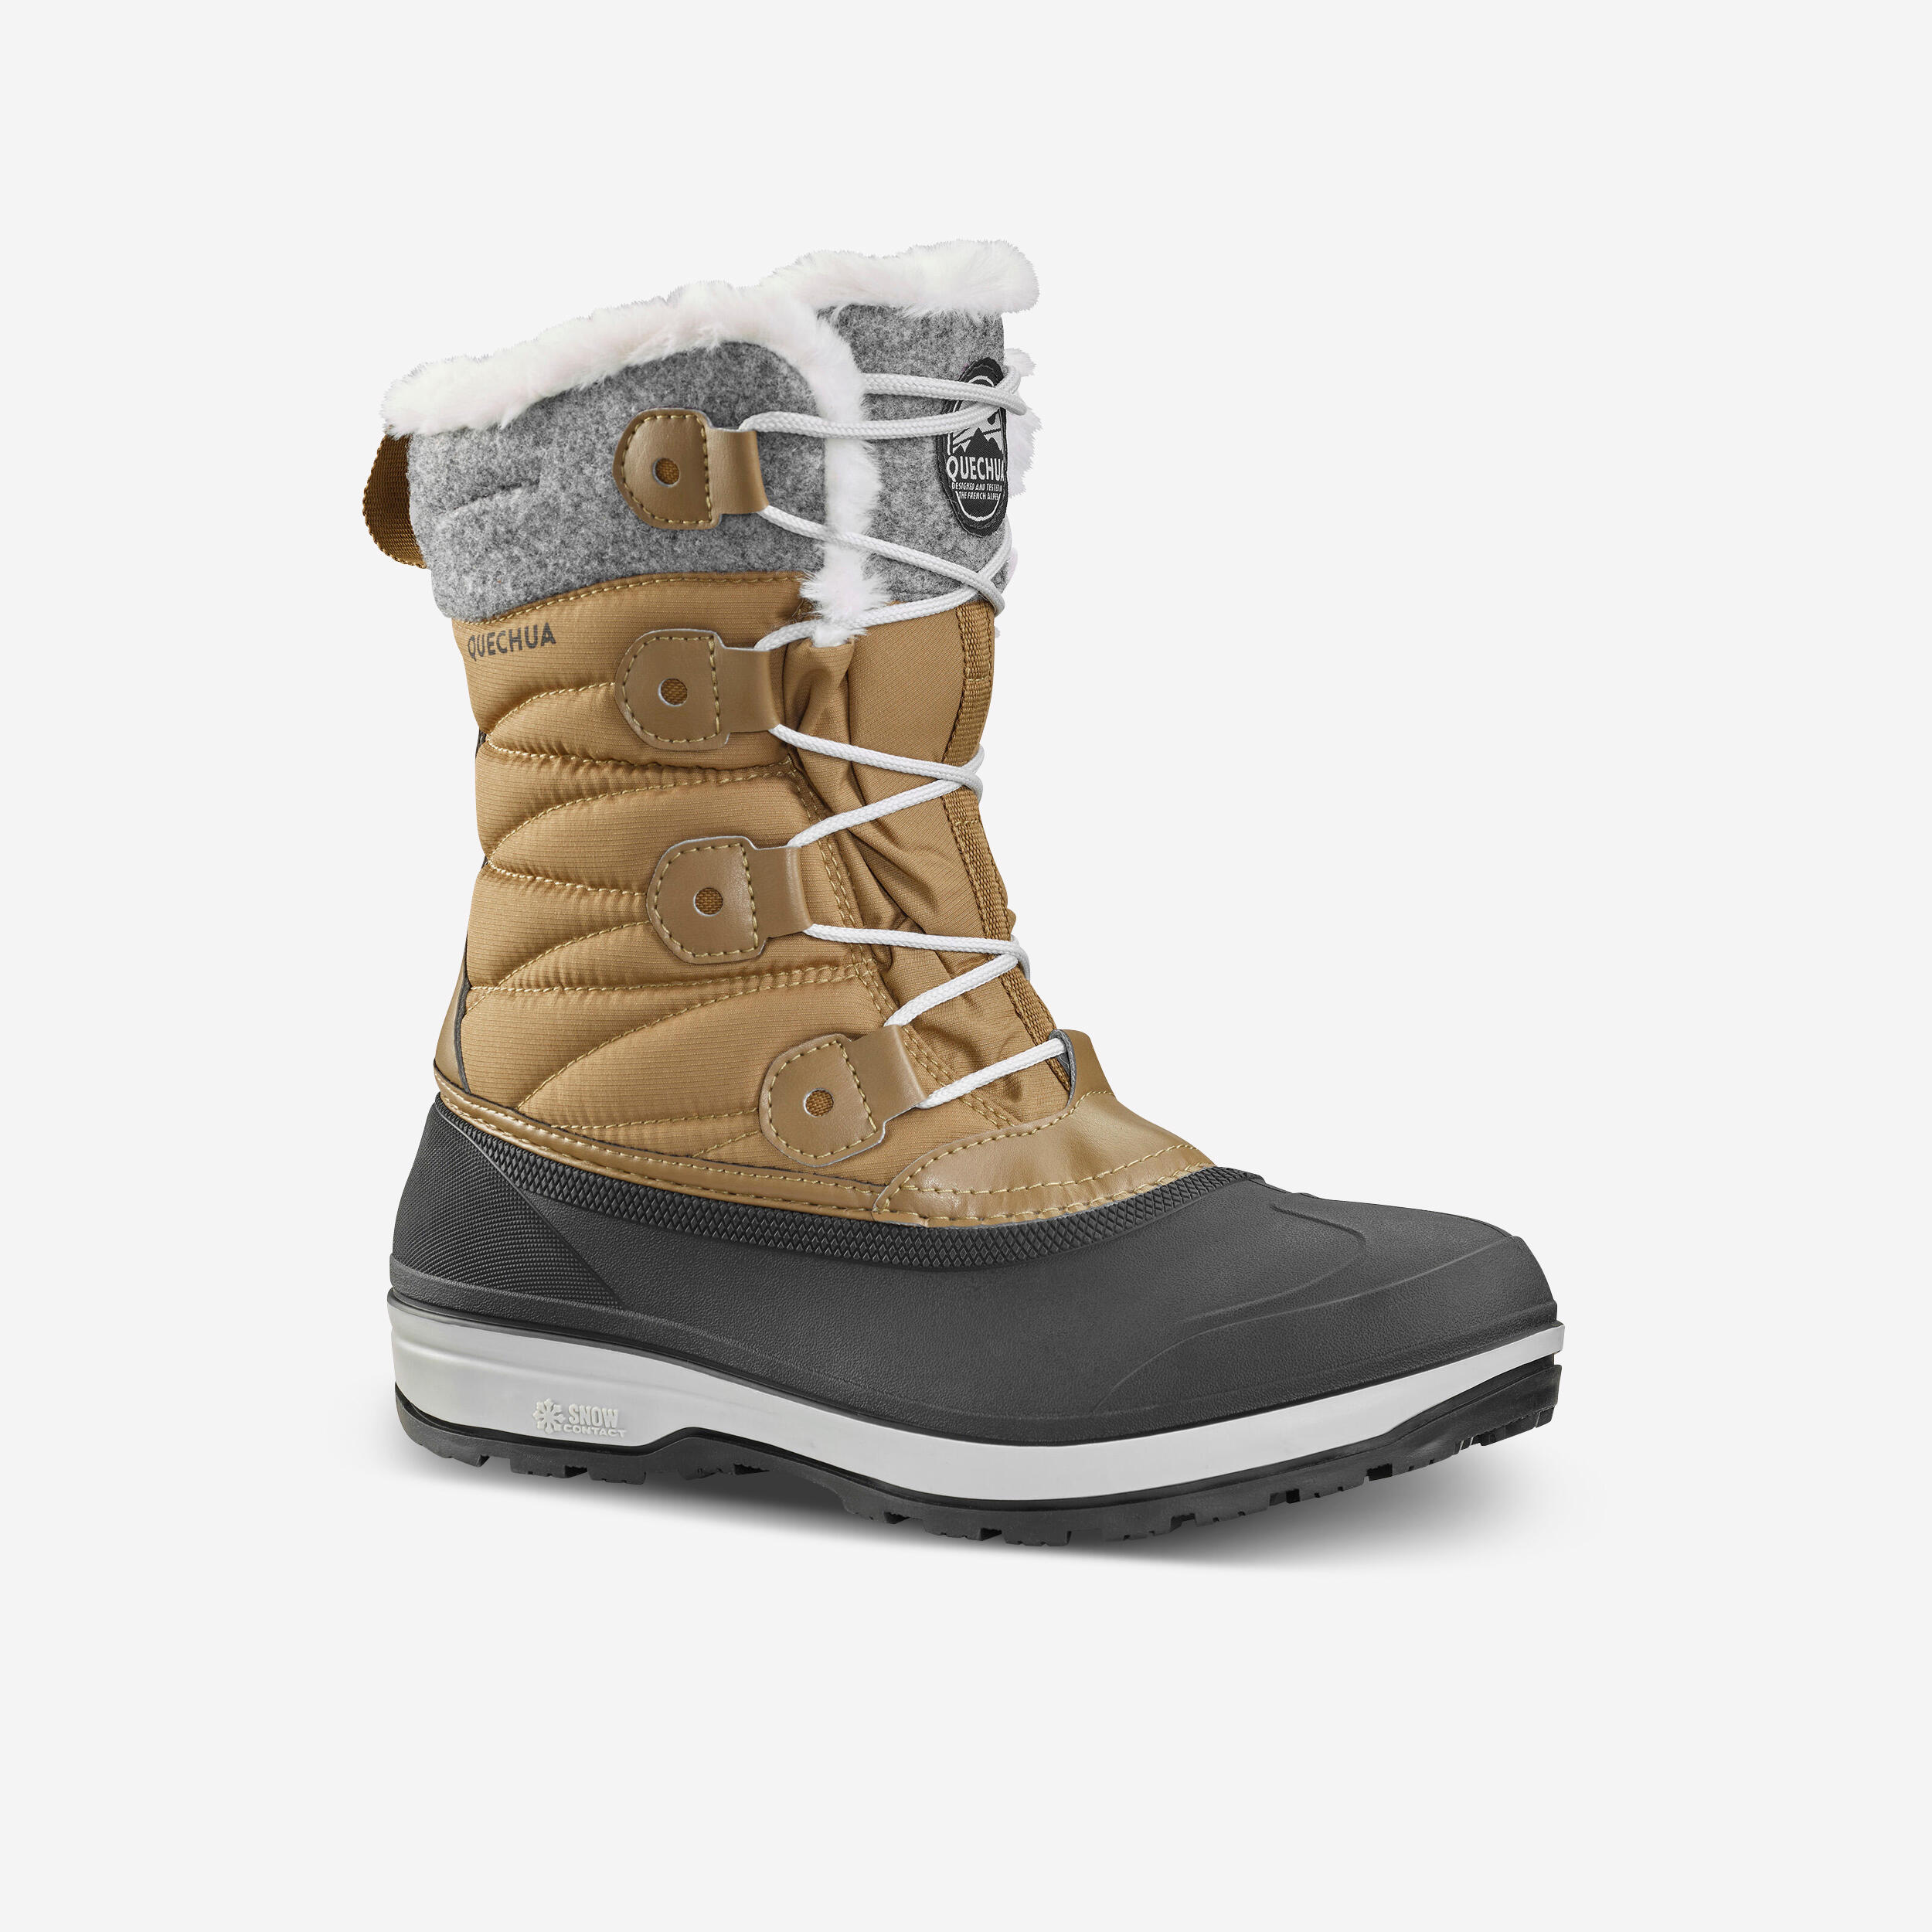 QUECHUA Women's waterproof warm snow boots - SH500 high boot 